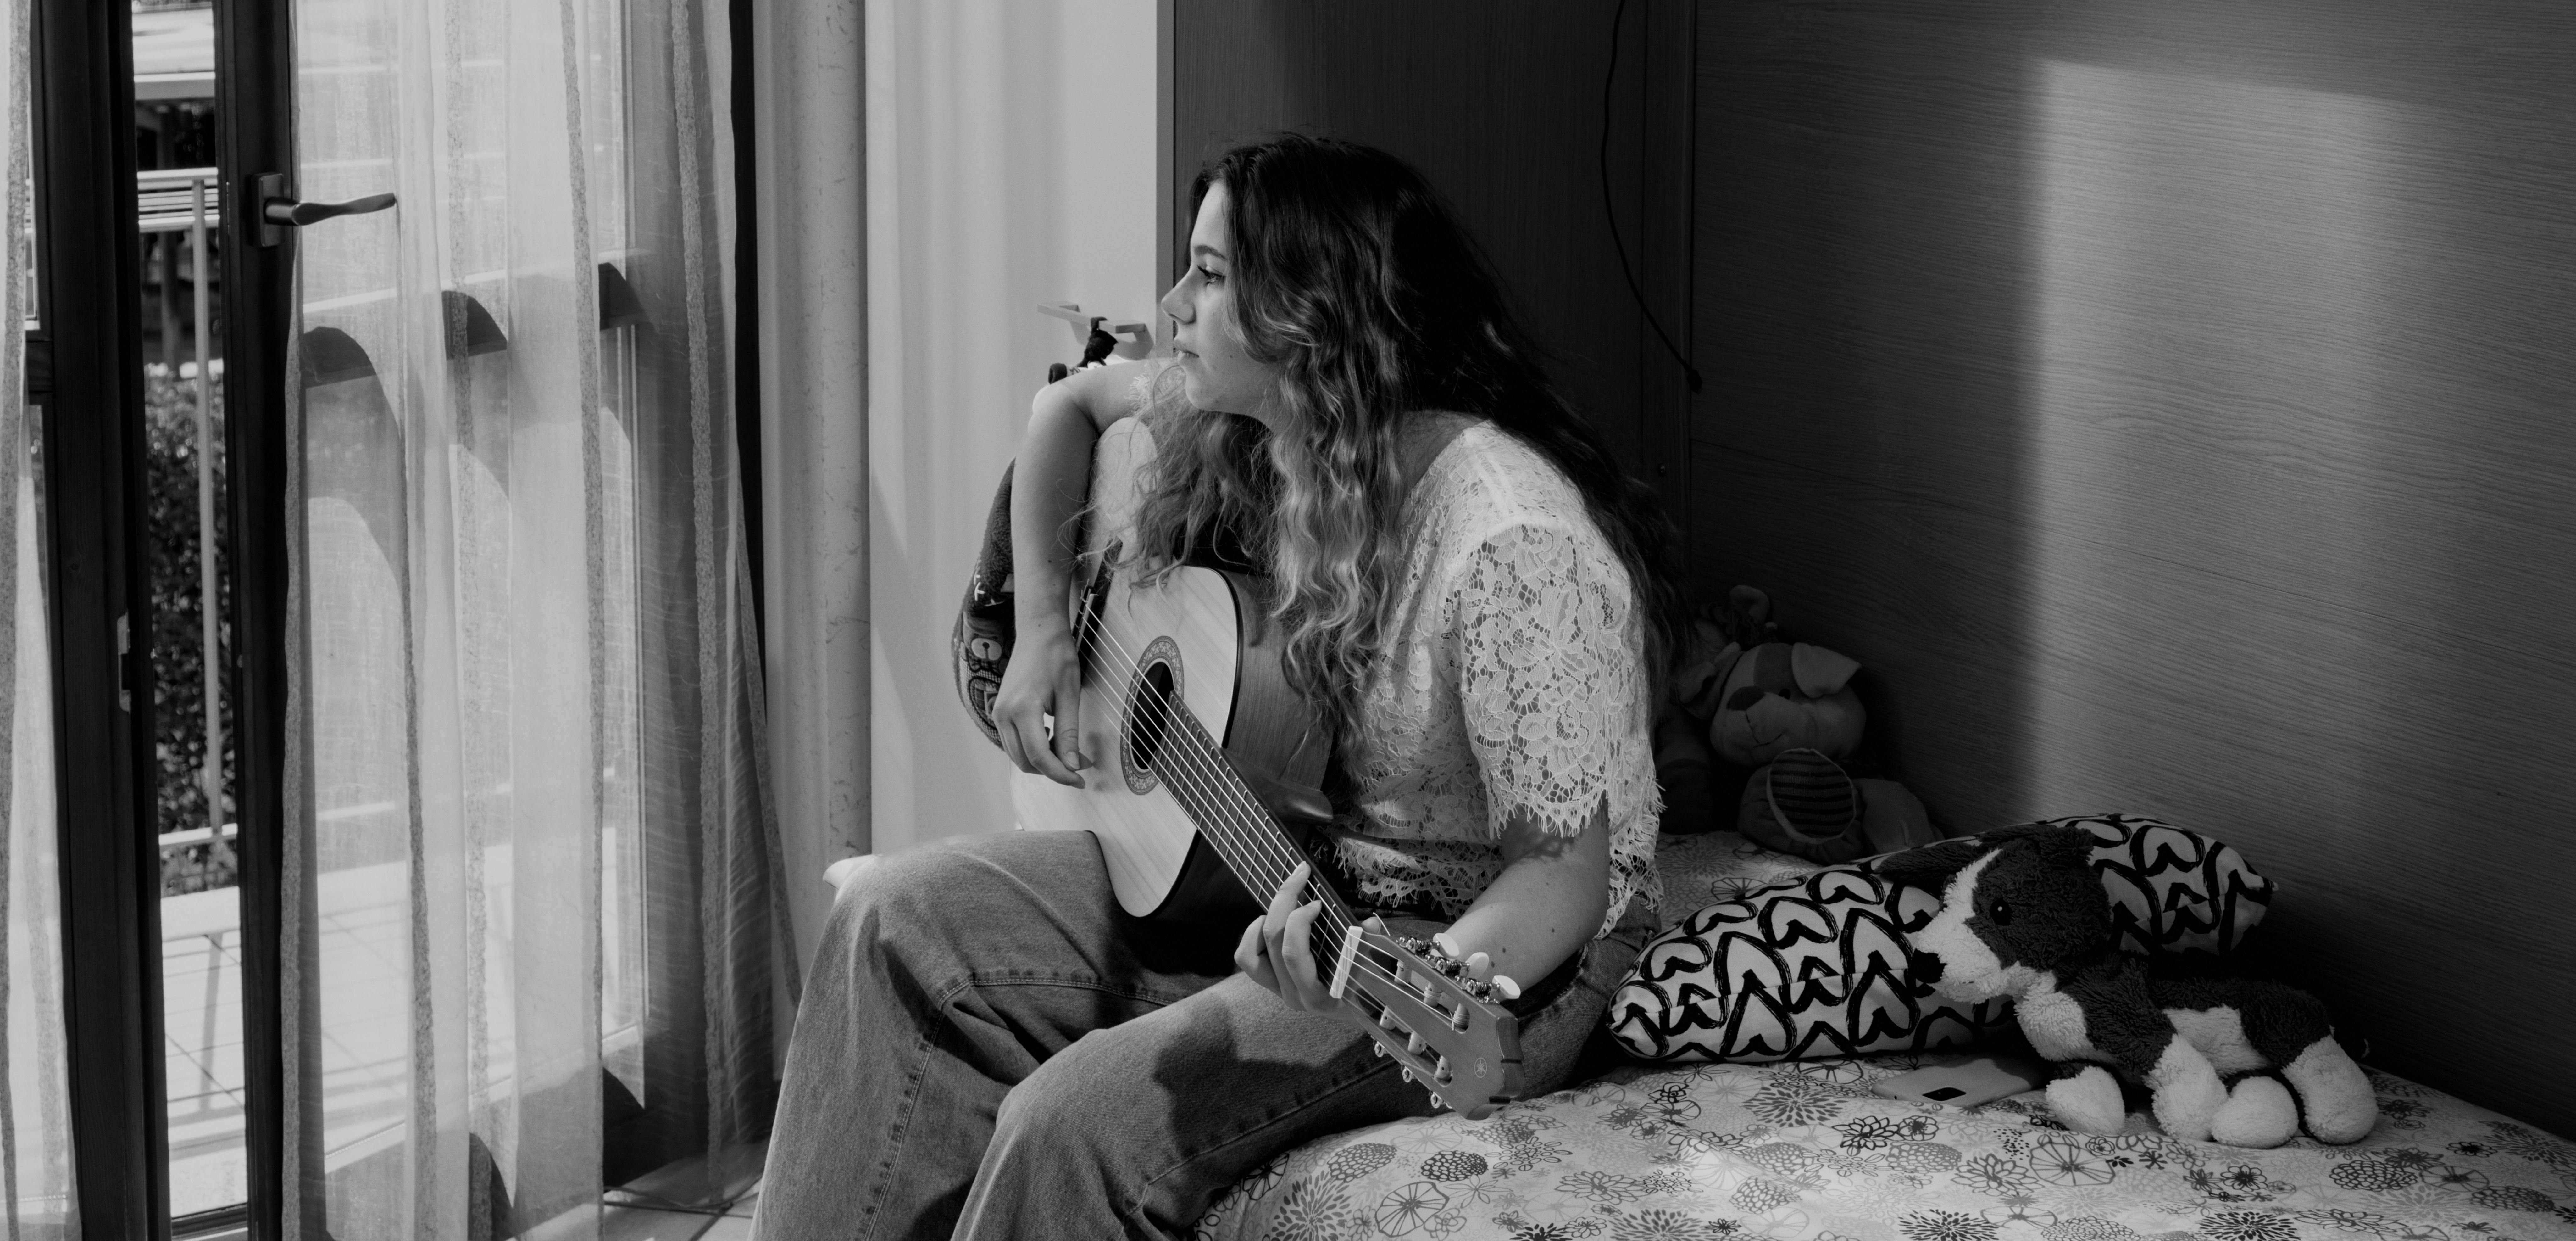 Anna, adolescente italiana, suona la chitarra nella sua stanza durante la pandemia da COVID-19.